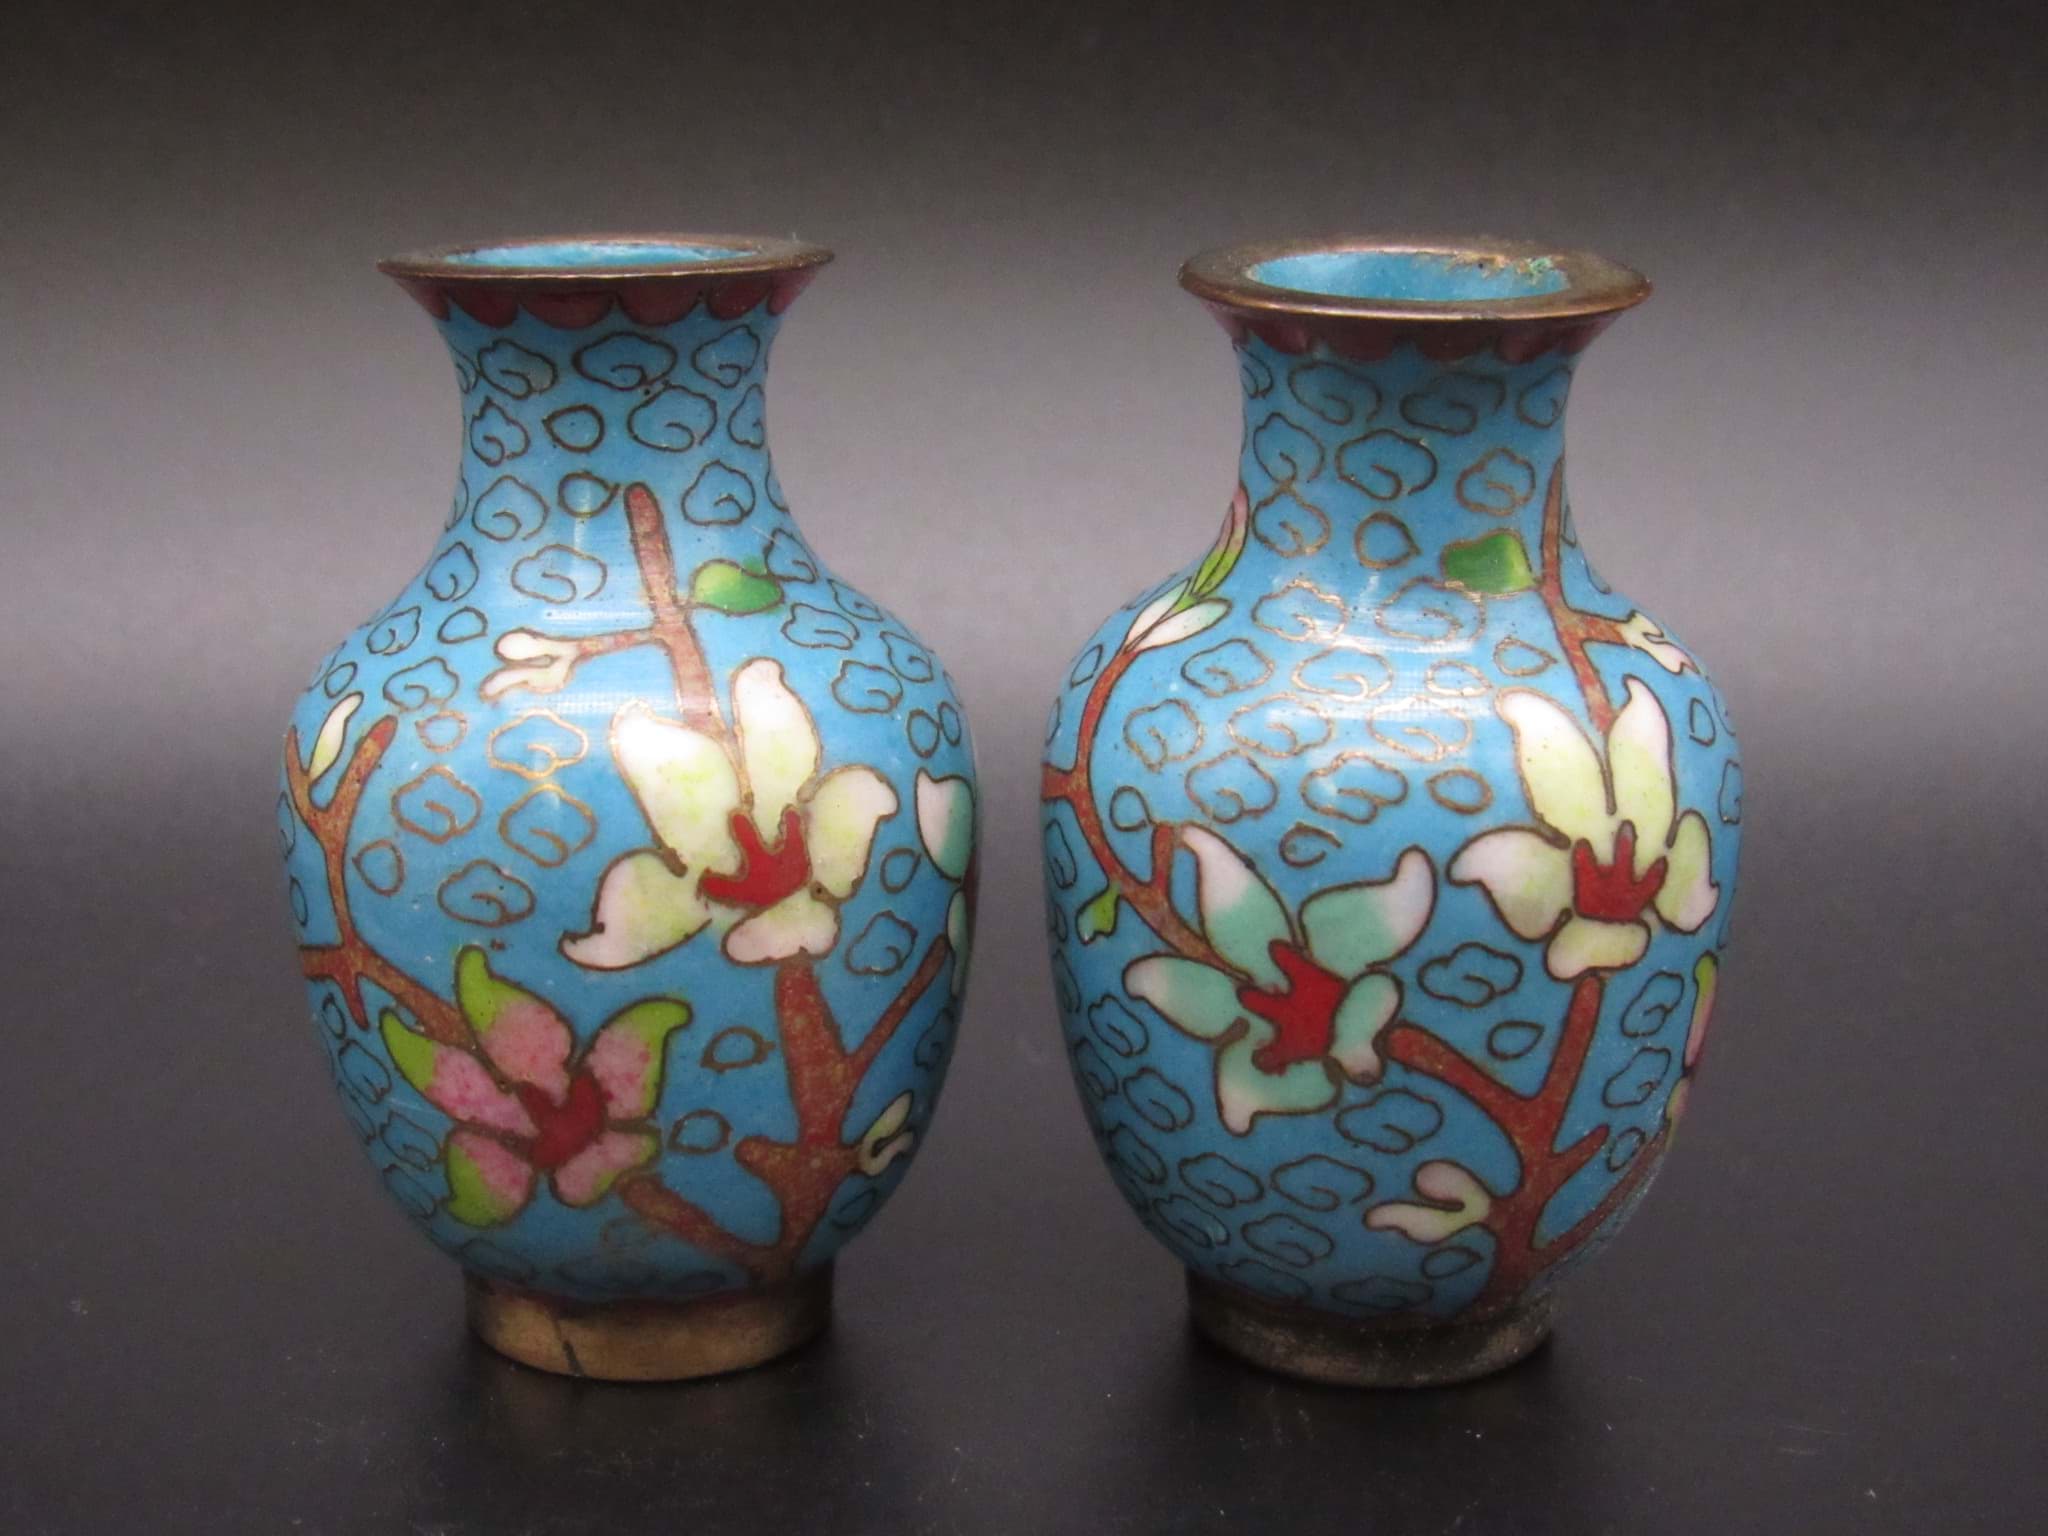 Bild av Cloisonne Emaille Vasenpaar, China 20. Jh.
